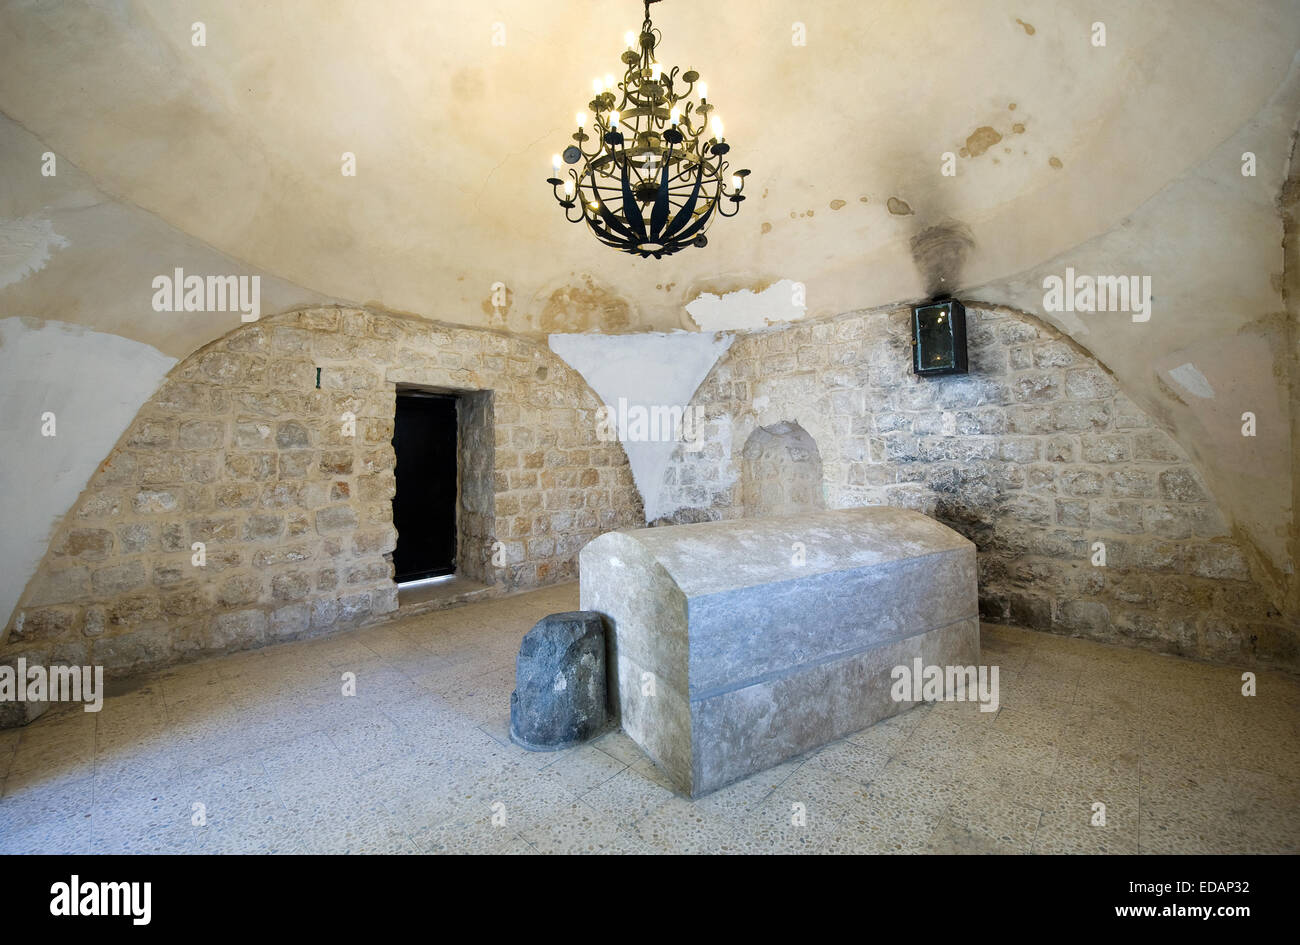 Le tombeau du patriarche Joseph à Naplouse. Joseph est le fils de Jacob. Il y est enterré avec ses deux fils, Manassé et Éphraïm Banque D'Images